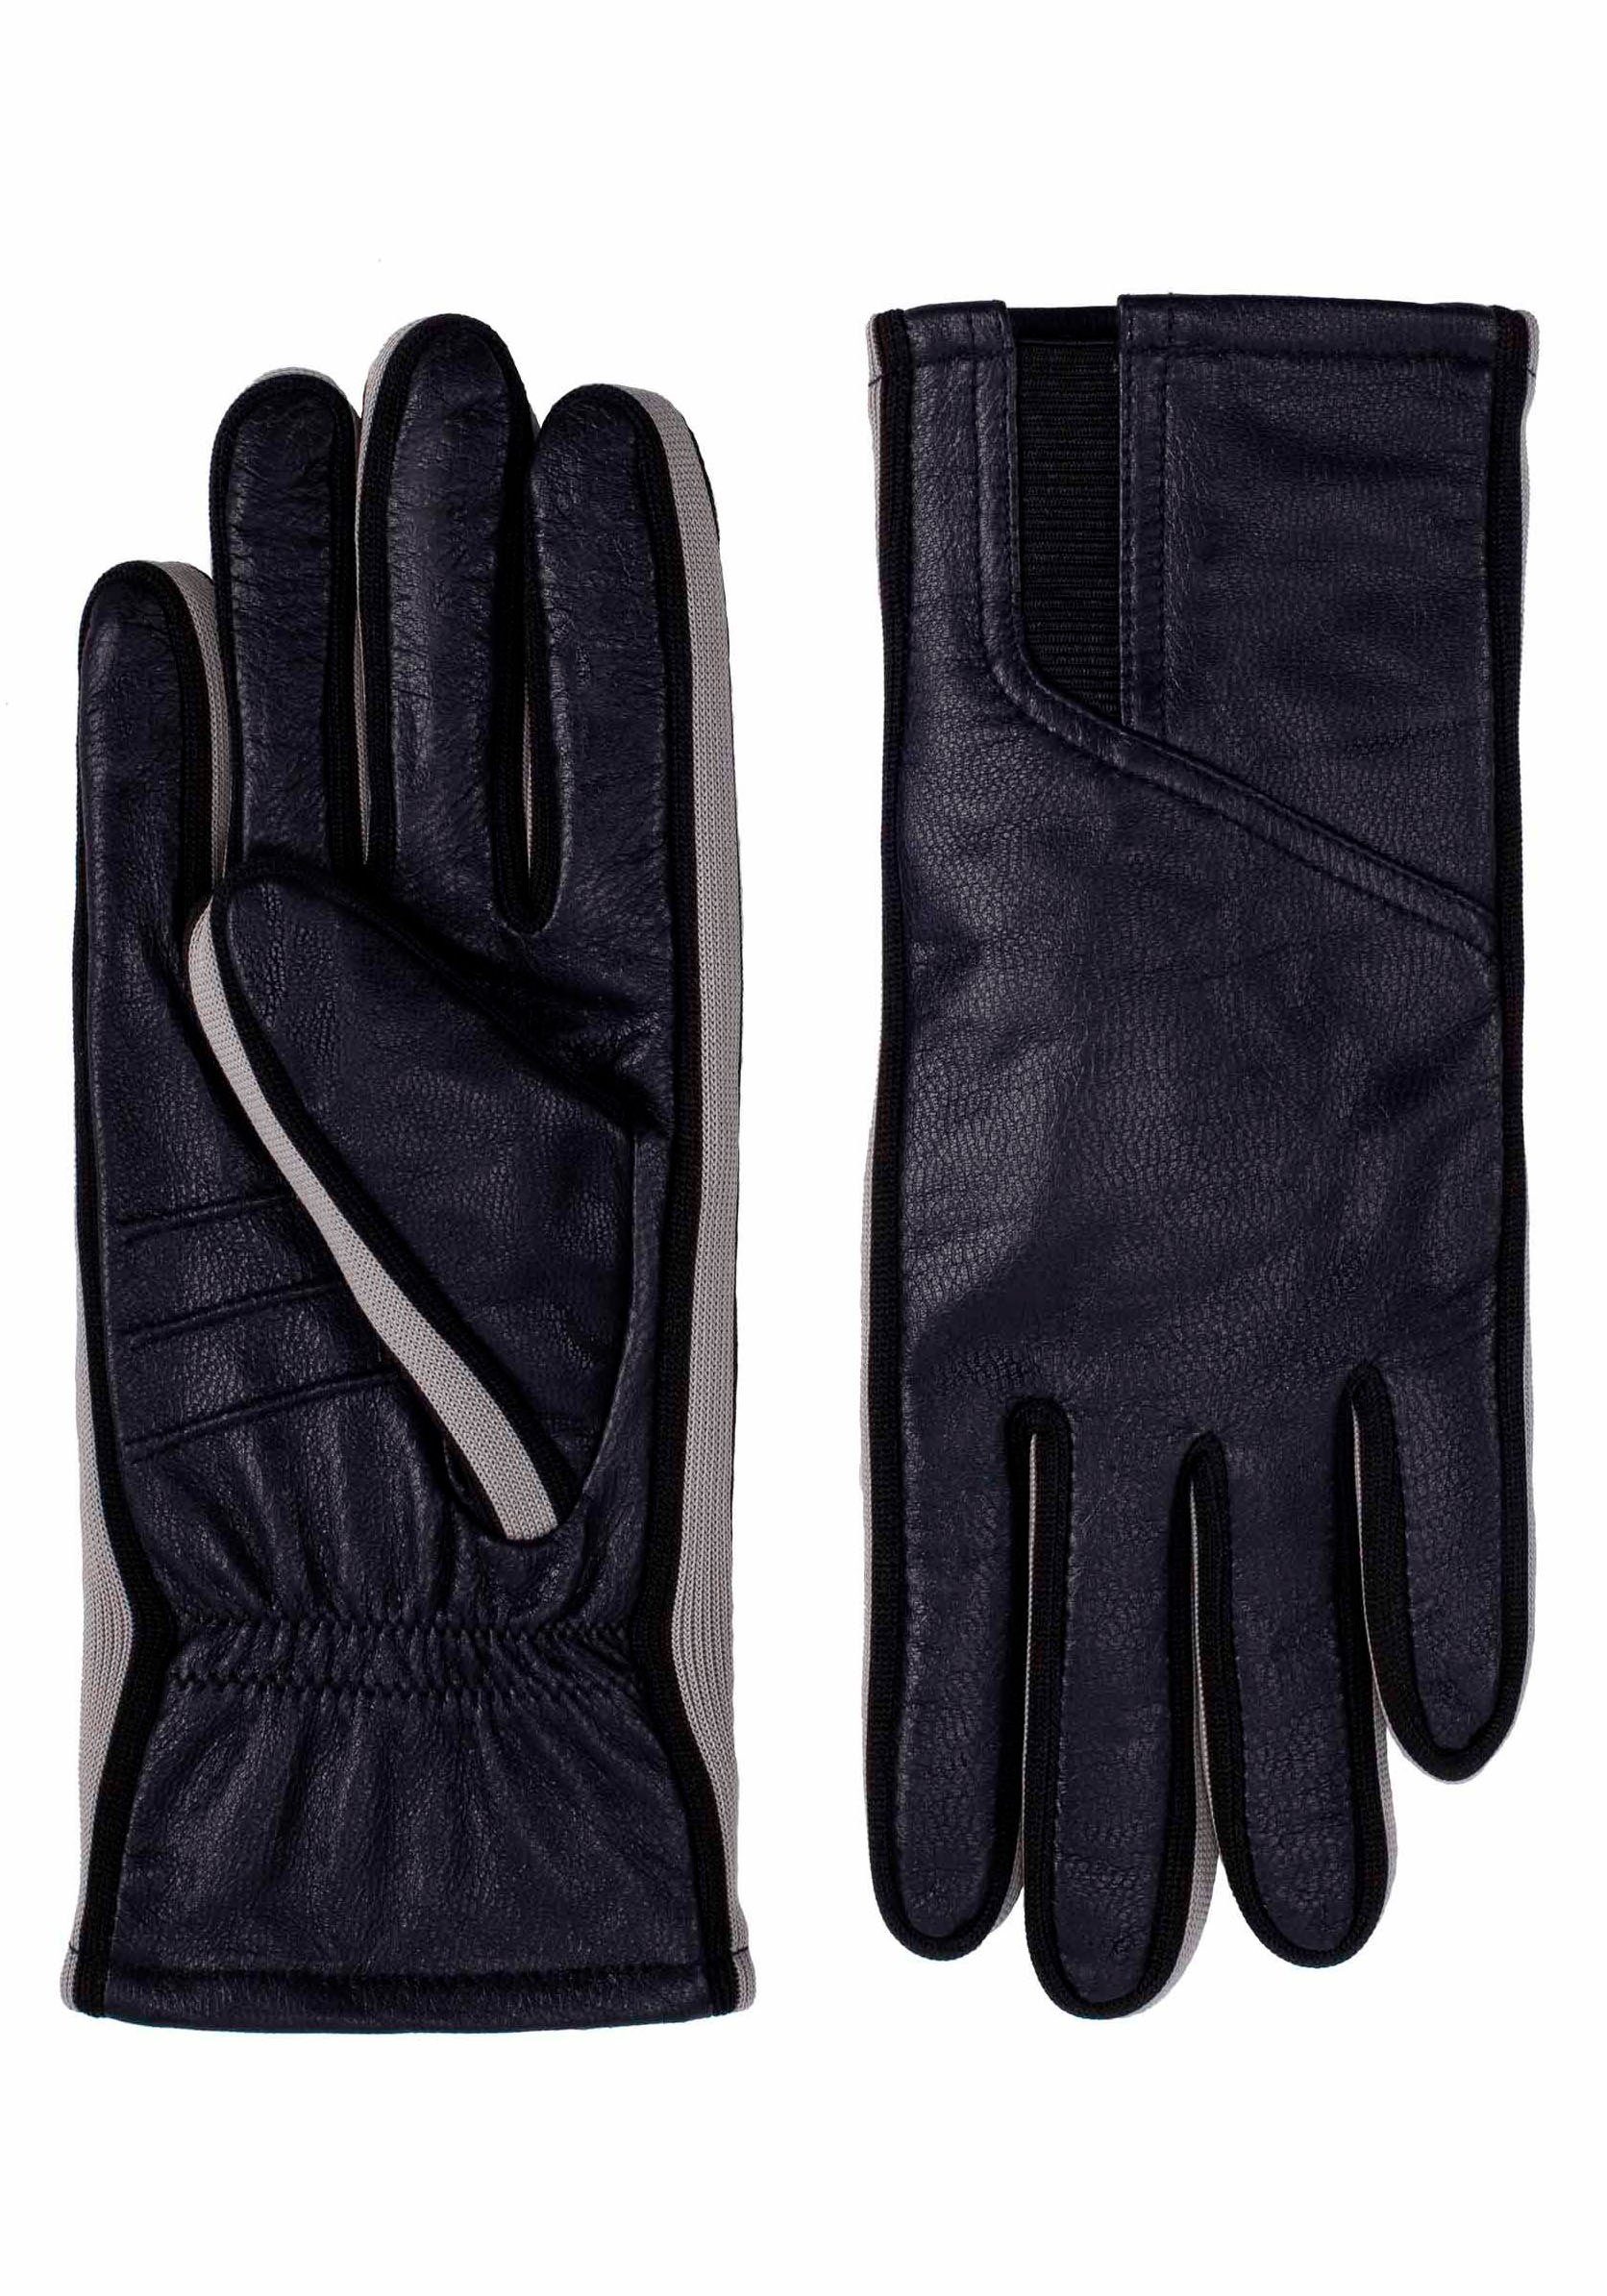 Lederhandschuhe Touchfunktion Gil dark Look mit Sneaker- Design im Touch KESSLER sportliches blue